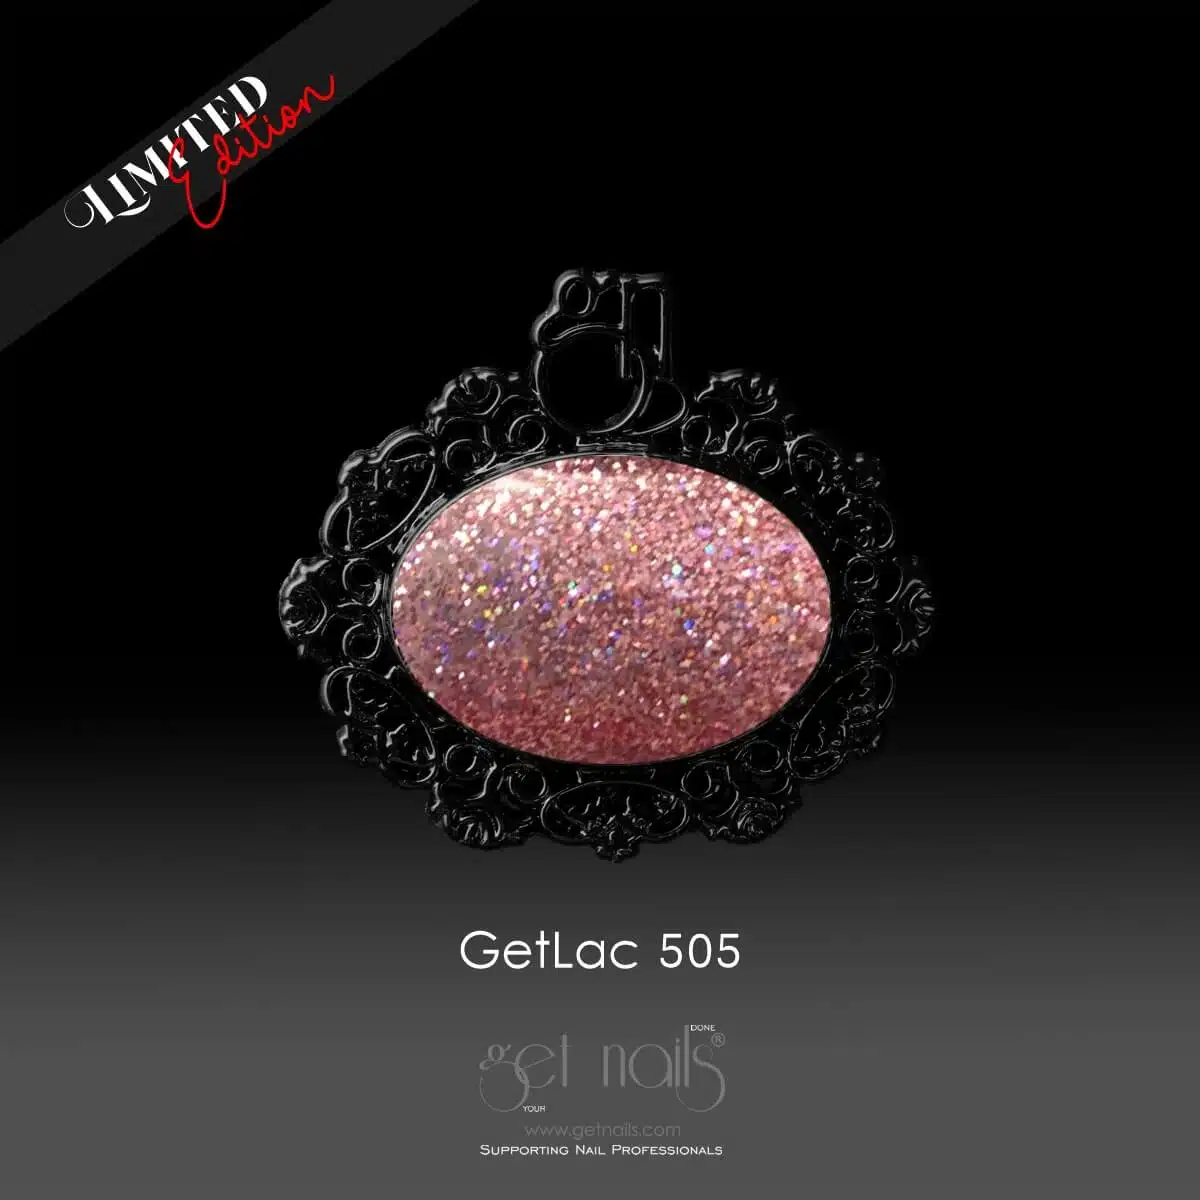 Get Nails Австрия - GetLac 505